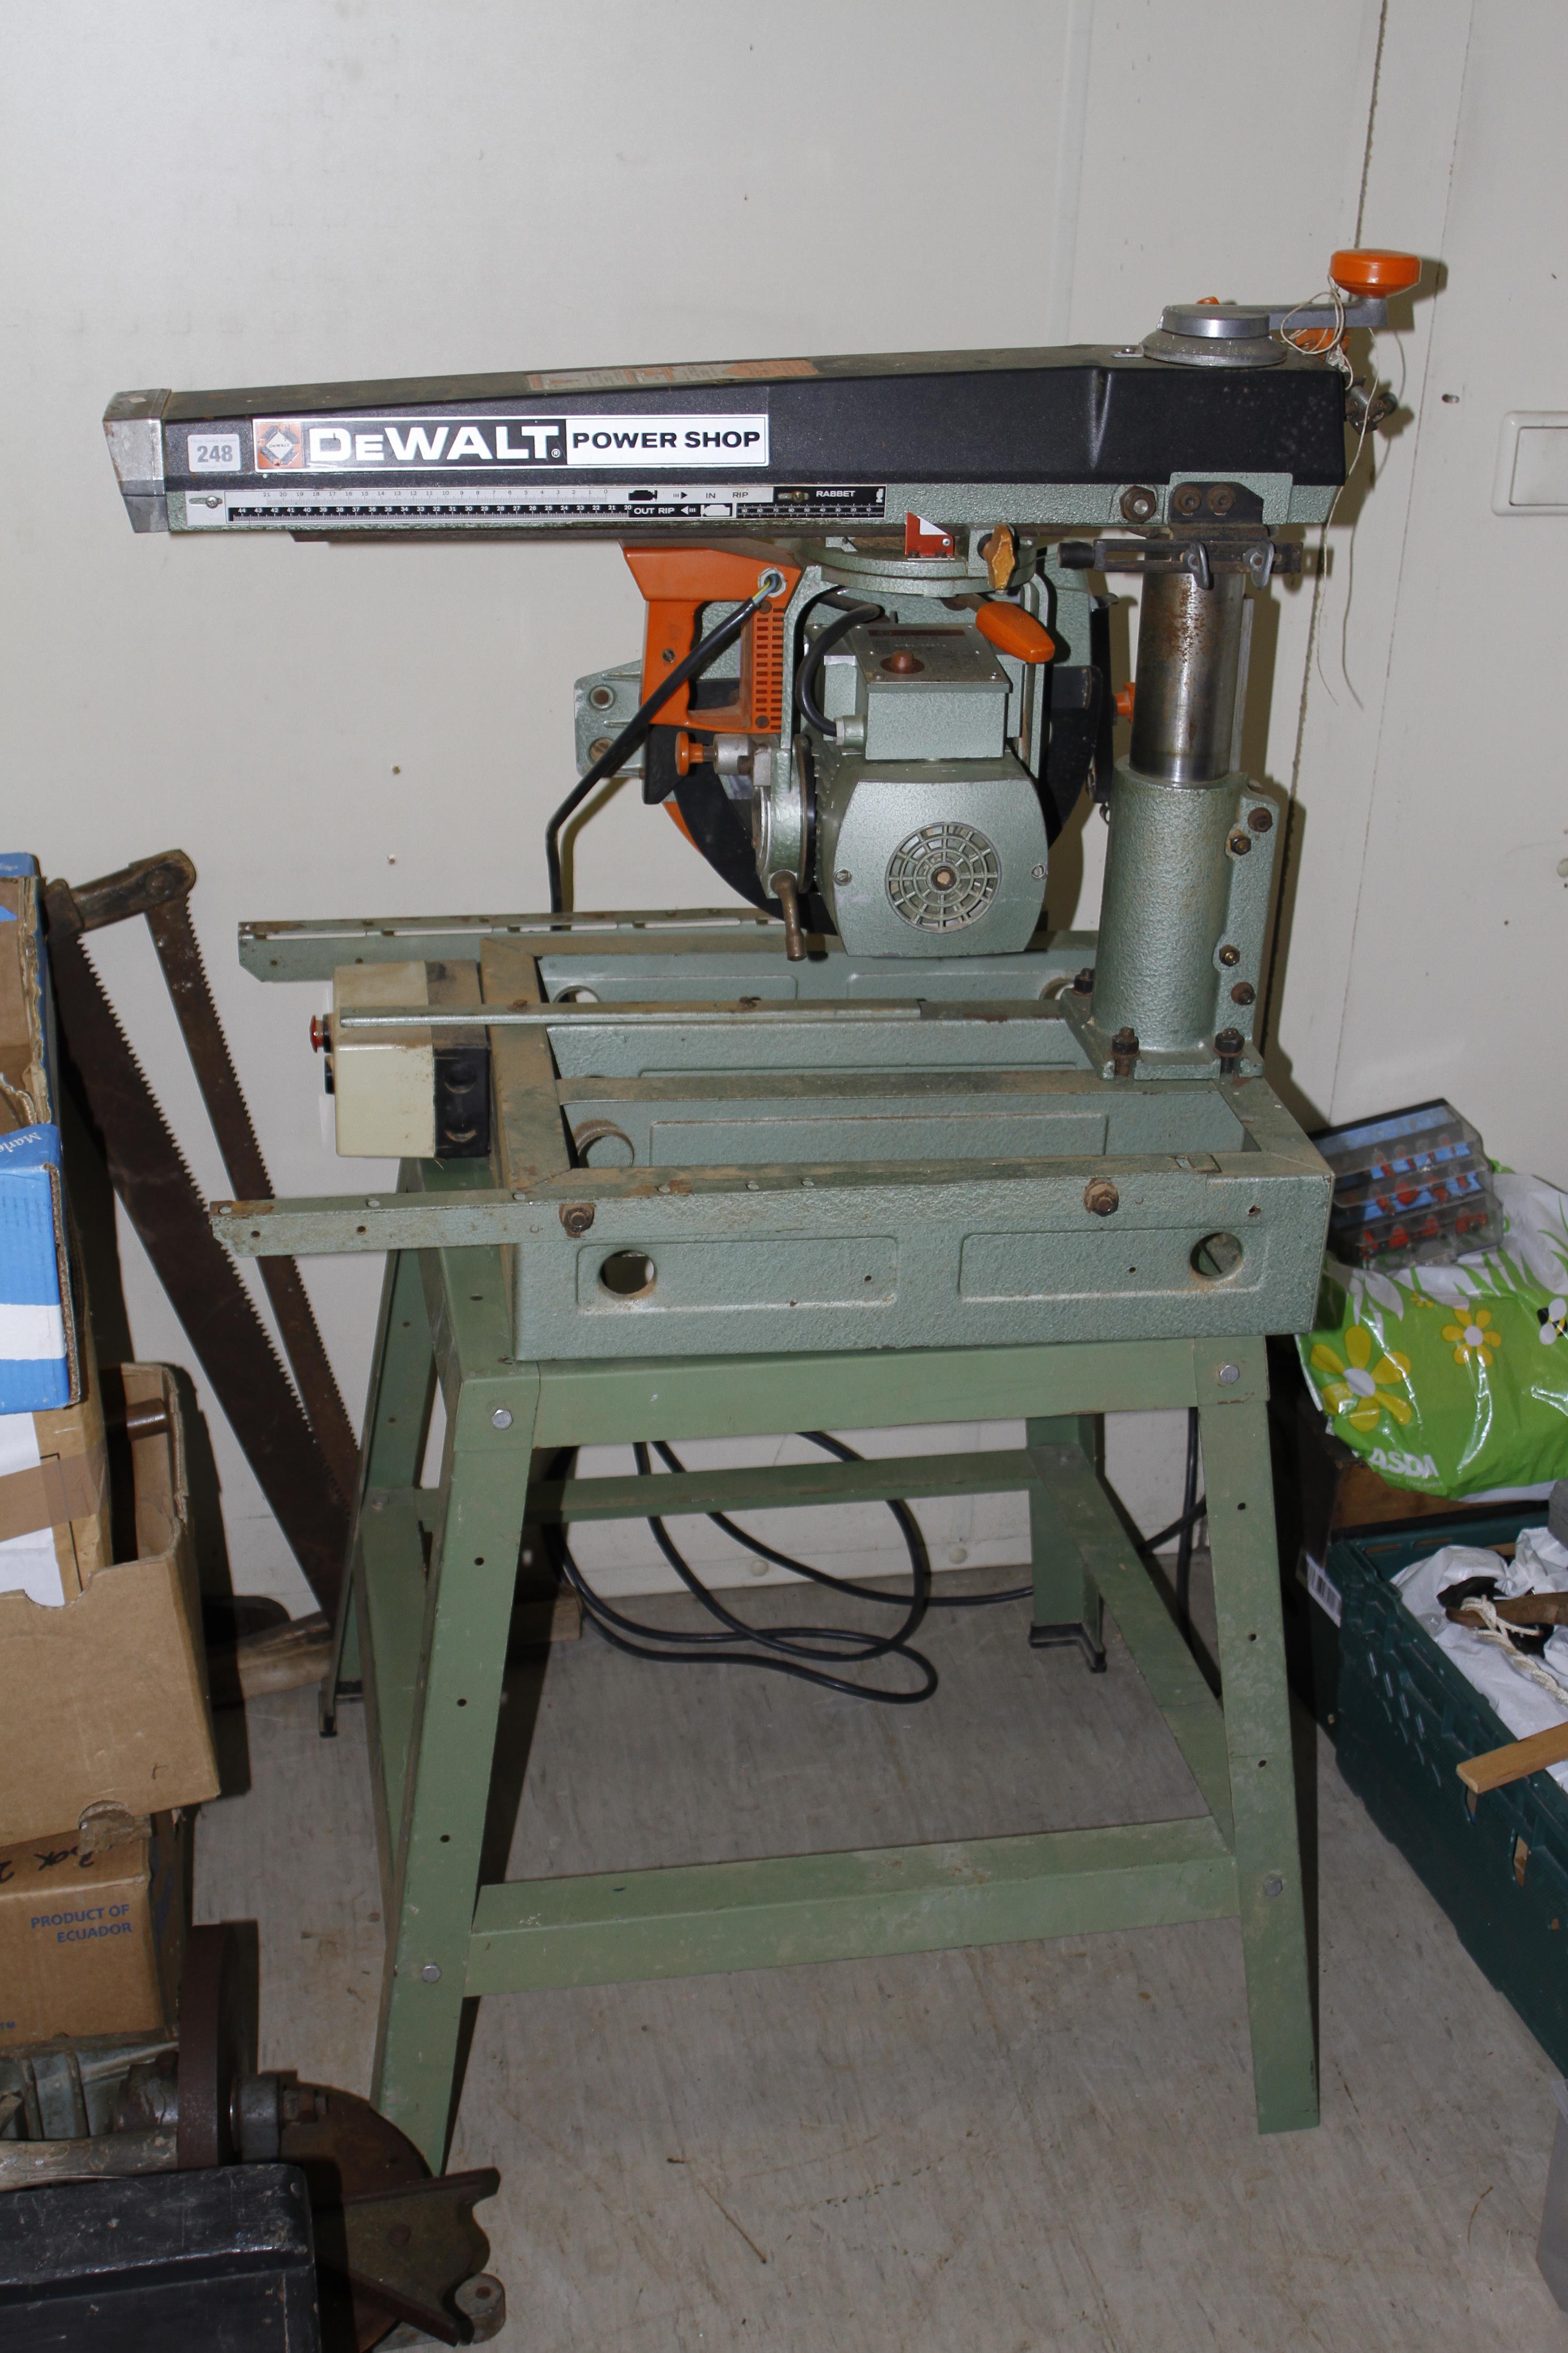 A DEWALT Power Shop radial arm saw (PAT tested) G